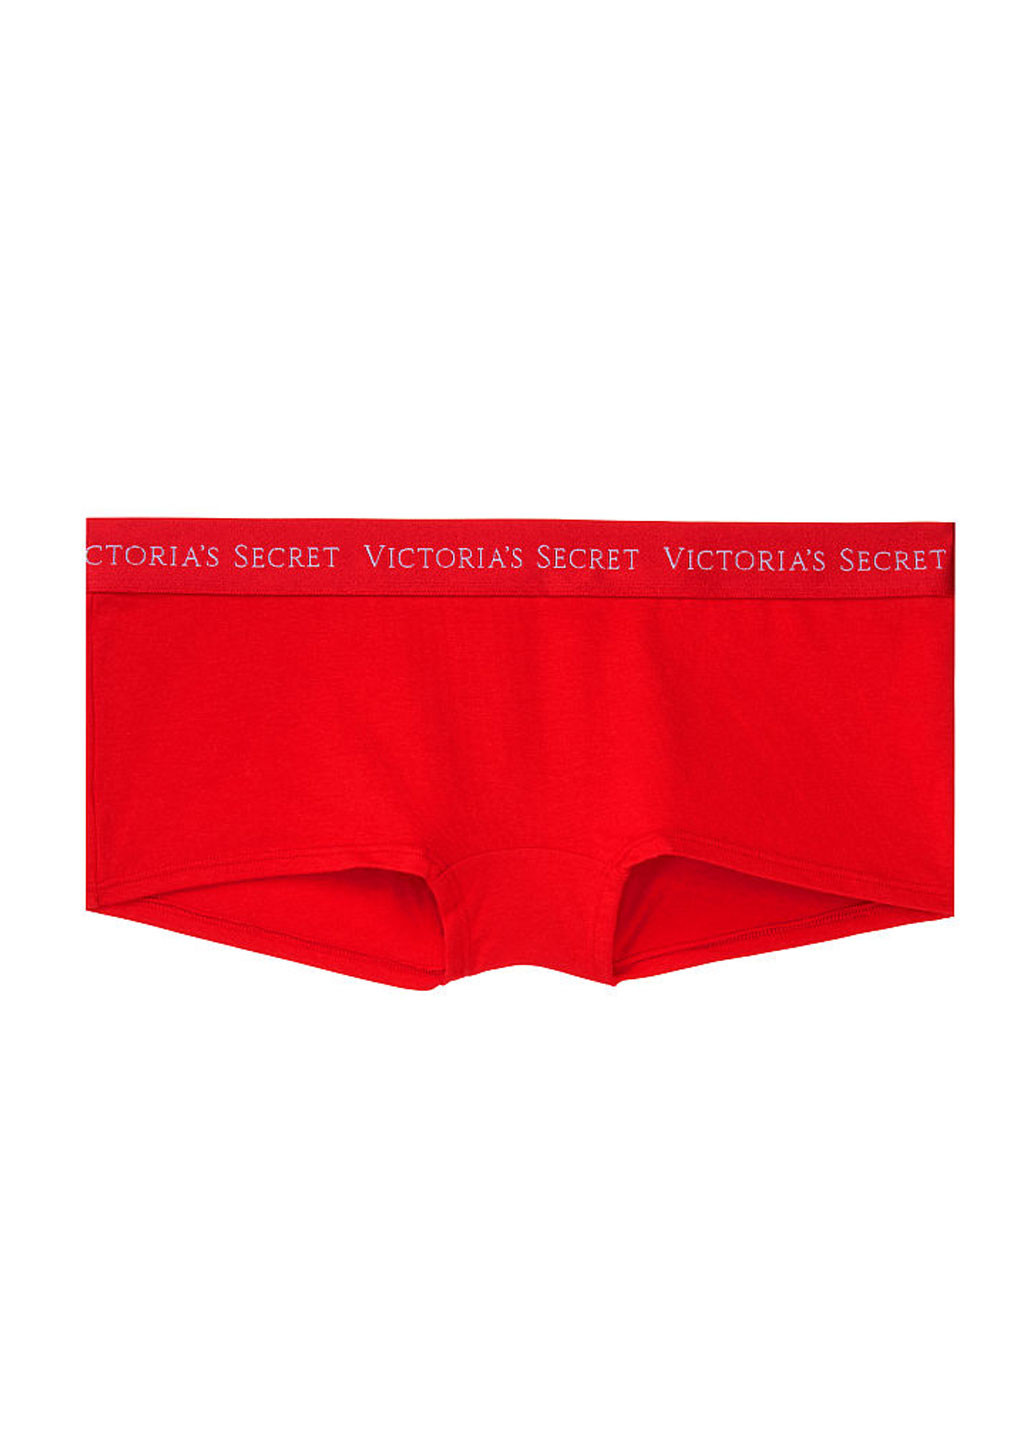 Трусы Victoria's Secret трусики-шорты логотипы красные повседневные хлопок